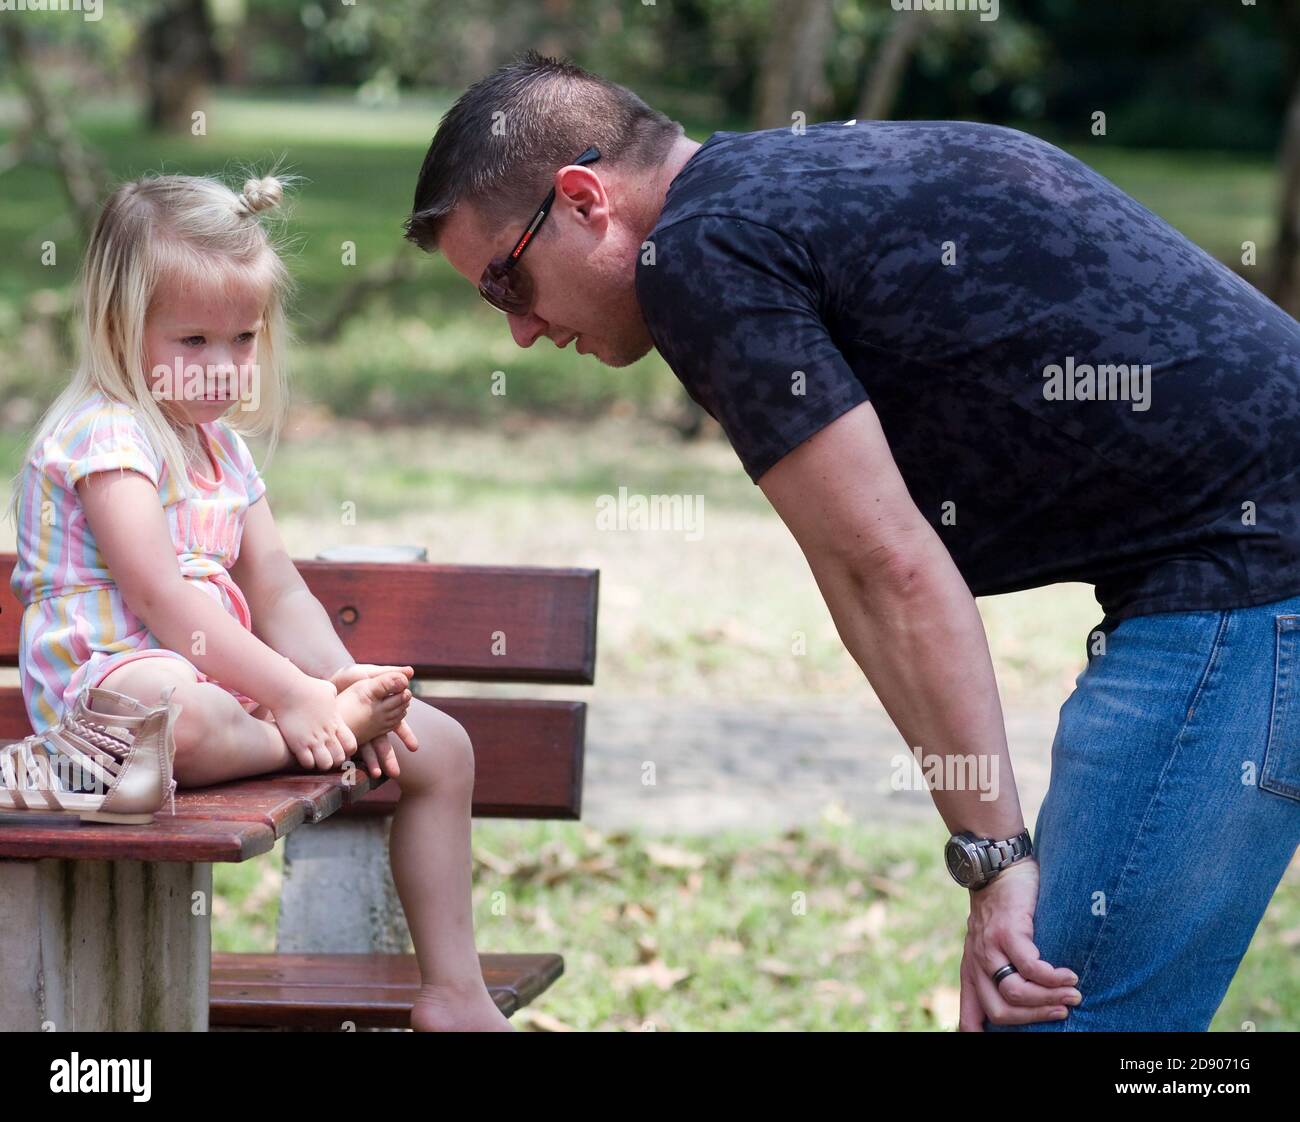 Ein Vater zeigt sich besorgt um seine traurige Tochter in einem Park und hockt auf ihre Ebene, während sie auf einem Tisch sitzt und ihren Fuß hält. Stockfoto